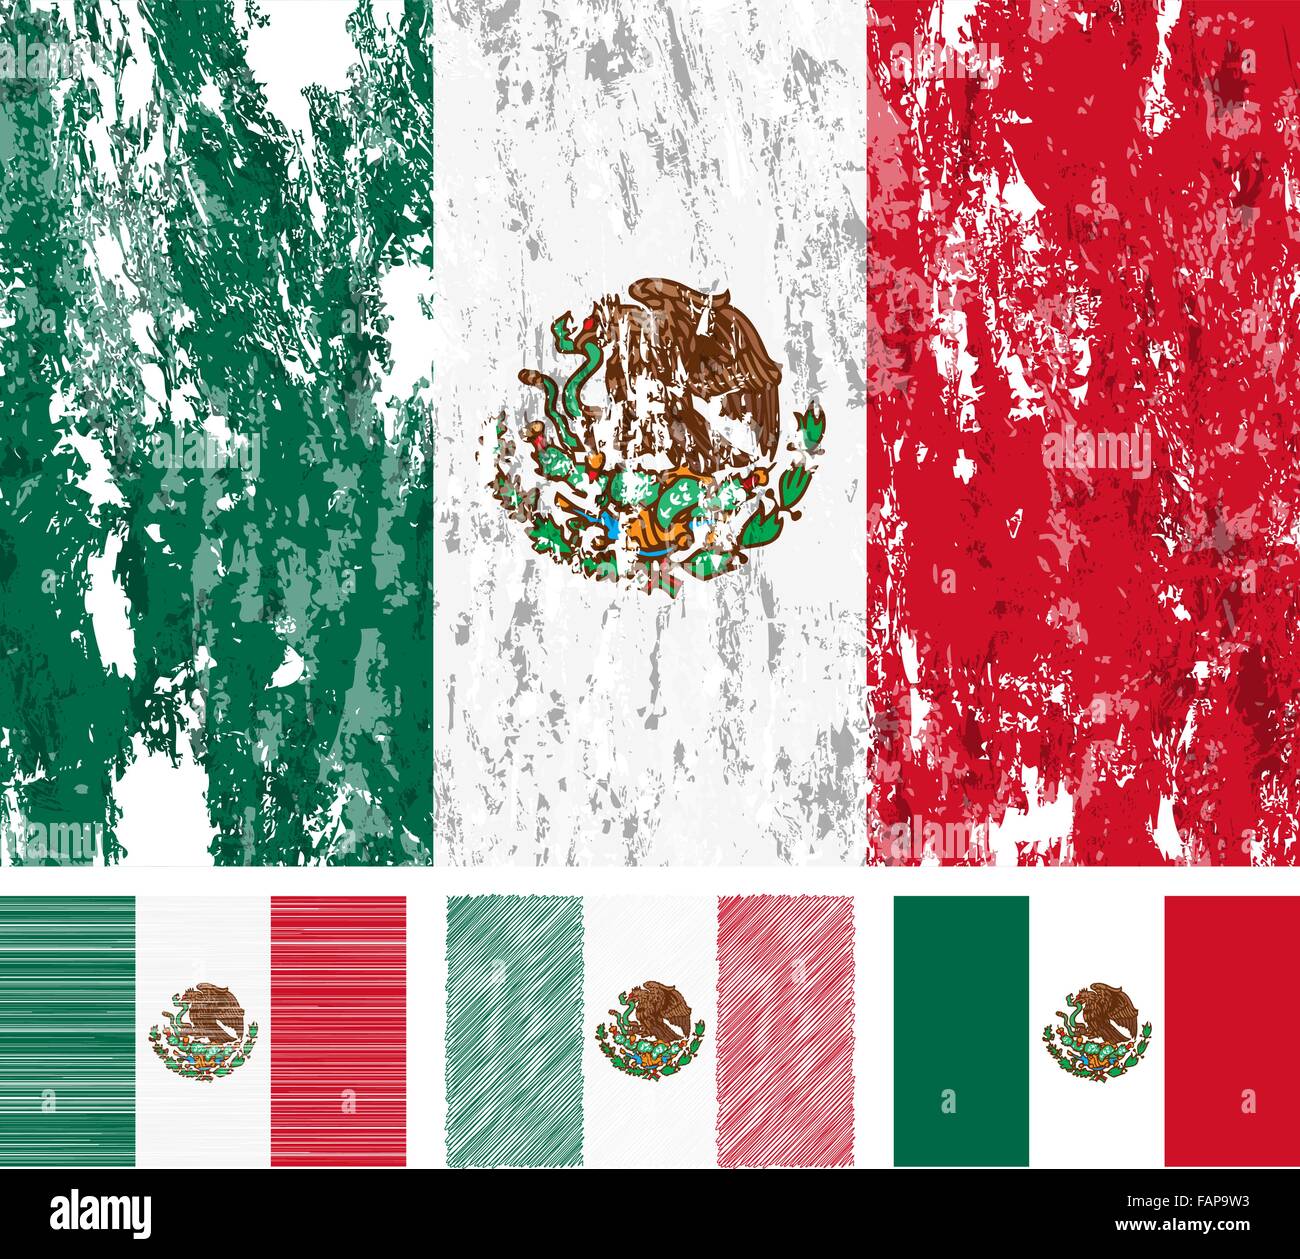 Mexiko-Grunge-Flag gesetzt auf einem weißen Hintergrund. Vektor-Illustration. Stock Vektor